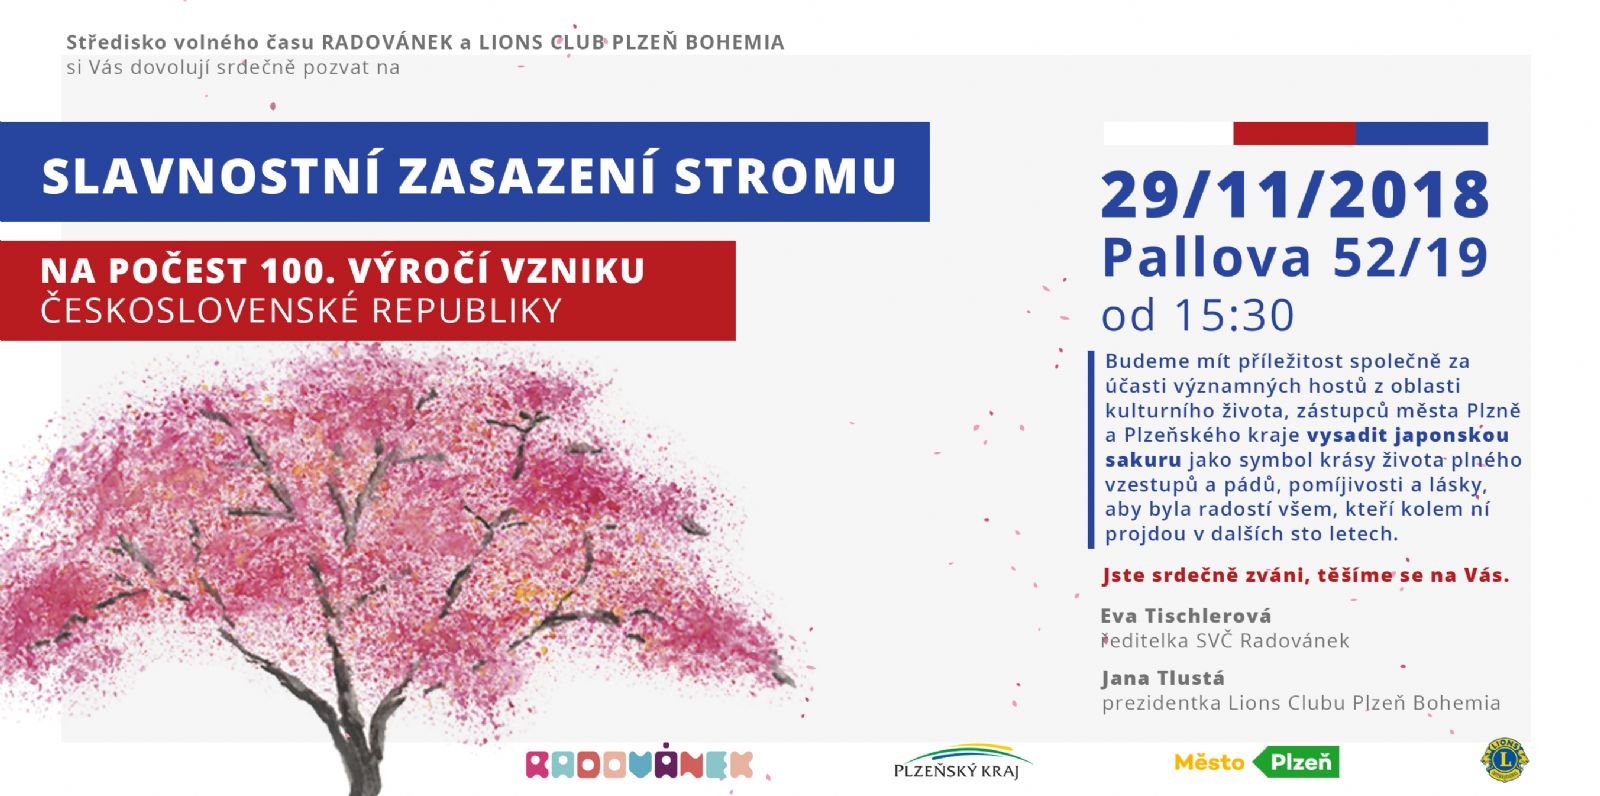 Slavnostní zasazení stromu na počest 100. výročí vzniku Československé republiky